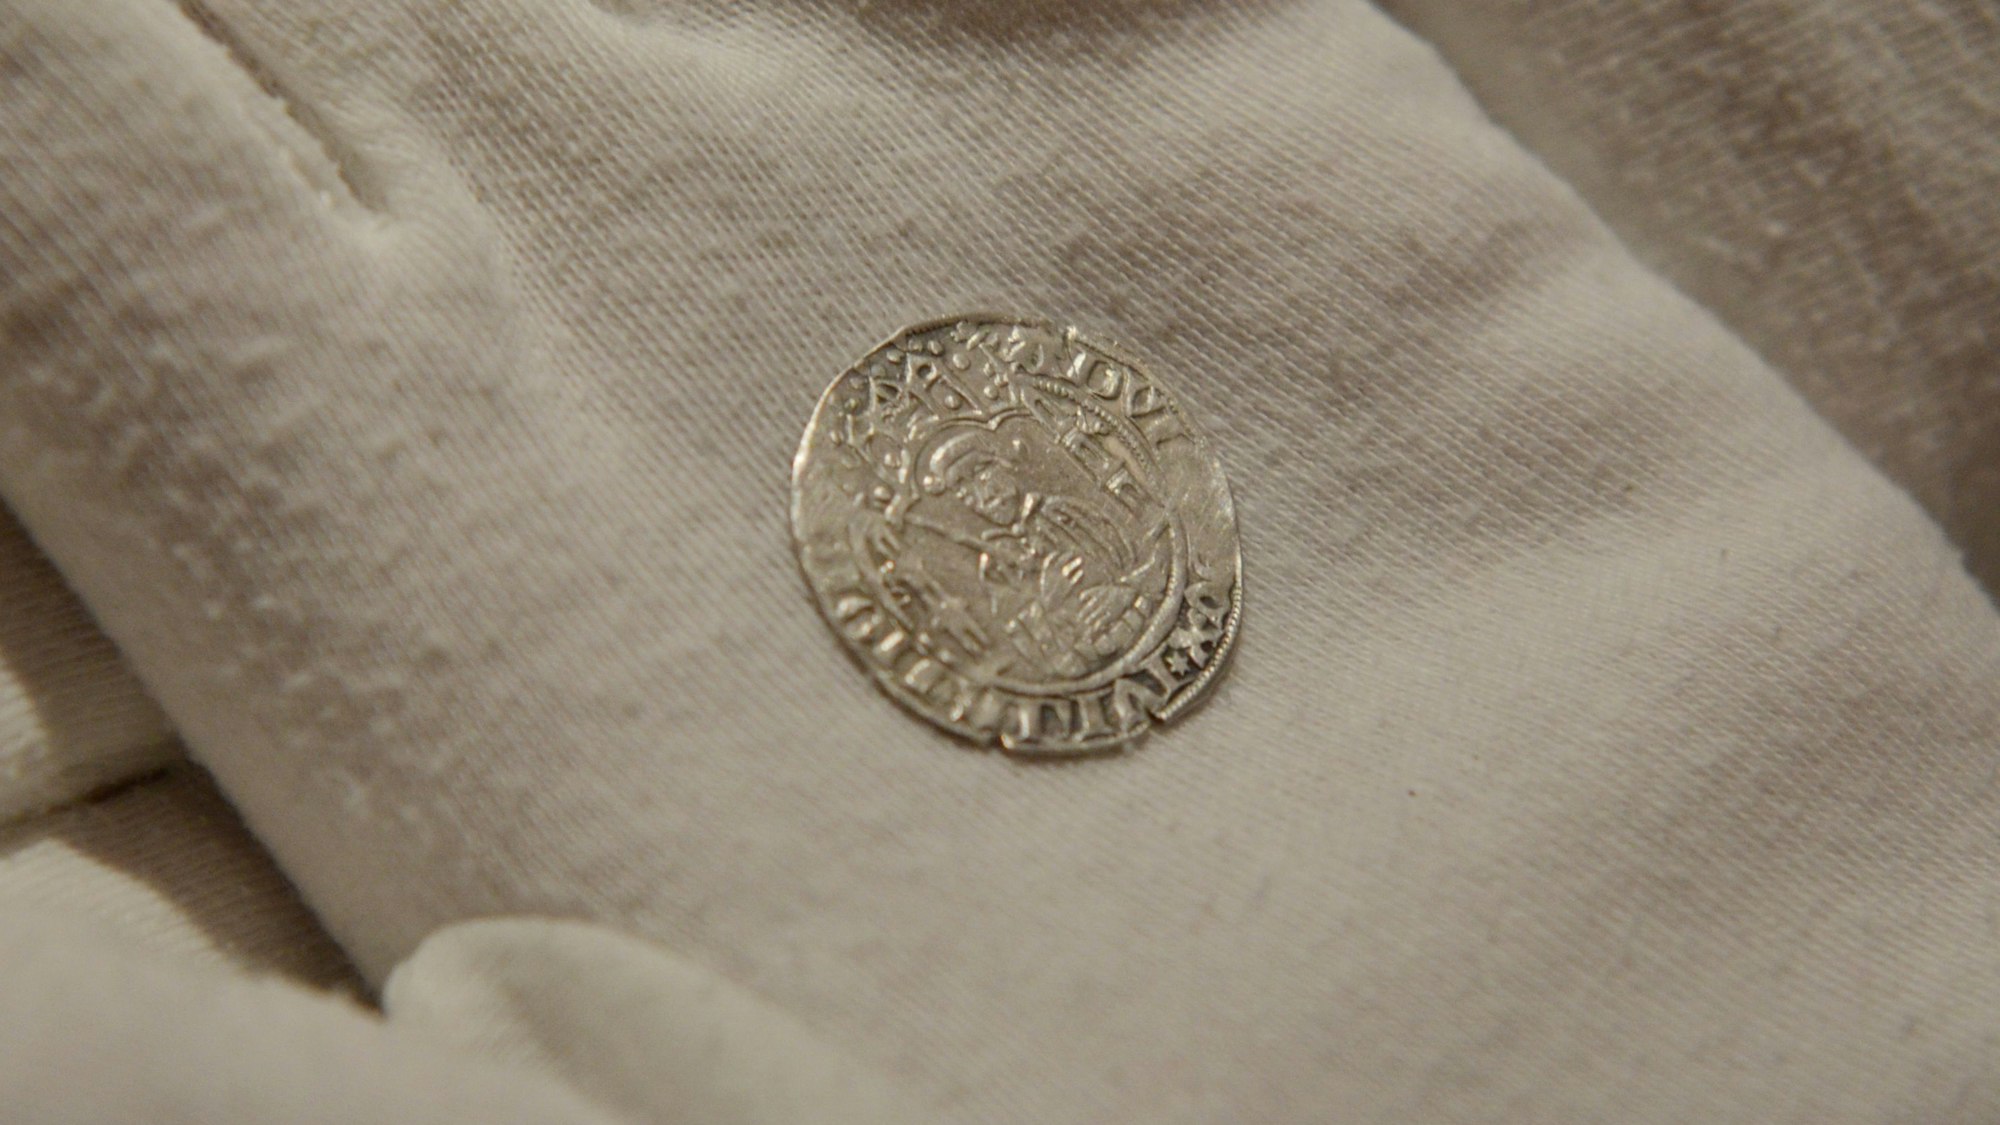 Auf einem Handschuh liegt eine der beiden Münzen mit dem Porträt des Herzogs Adolf VII. von Jülich-Berg.